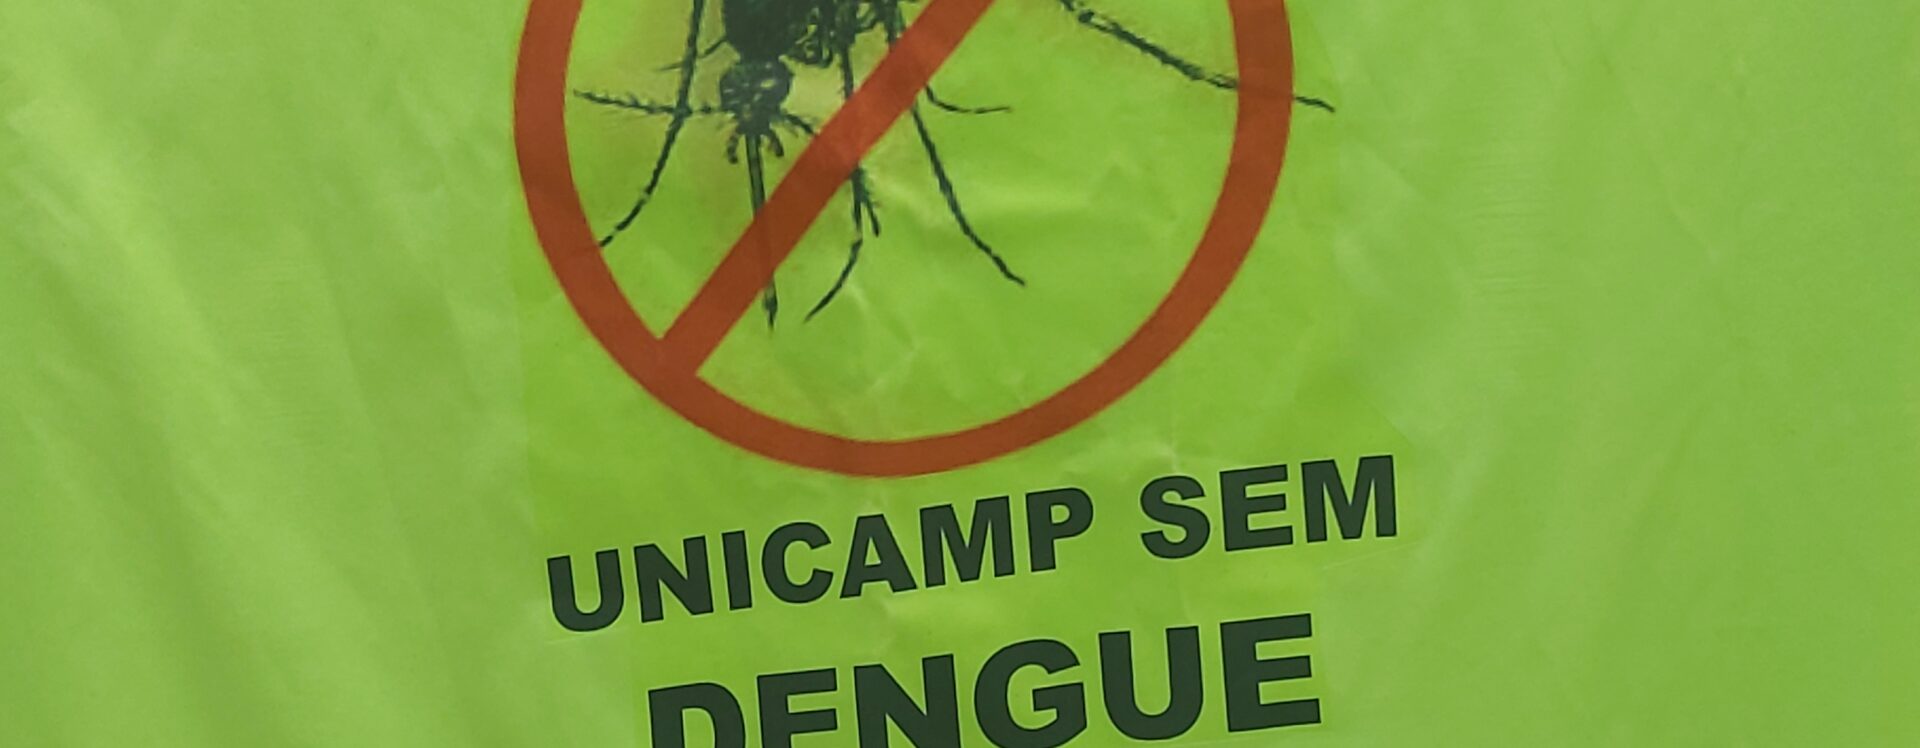 unicamp sem dengue